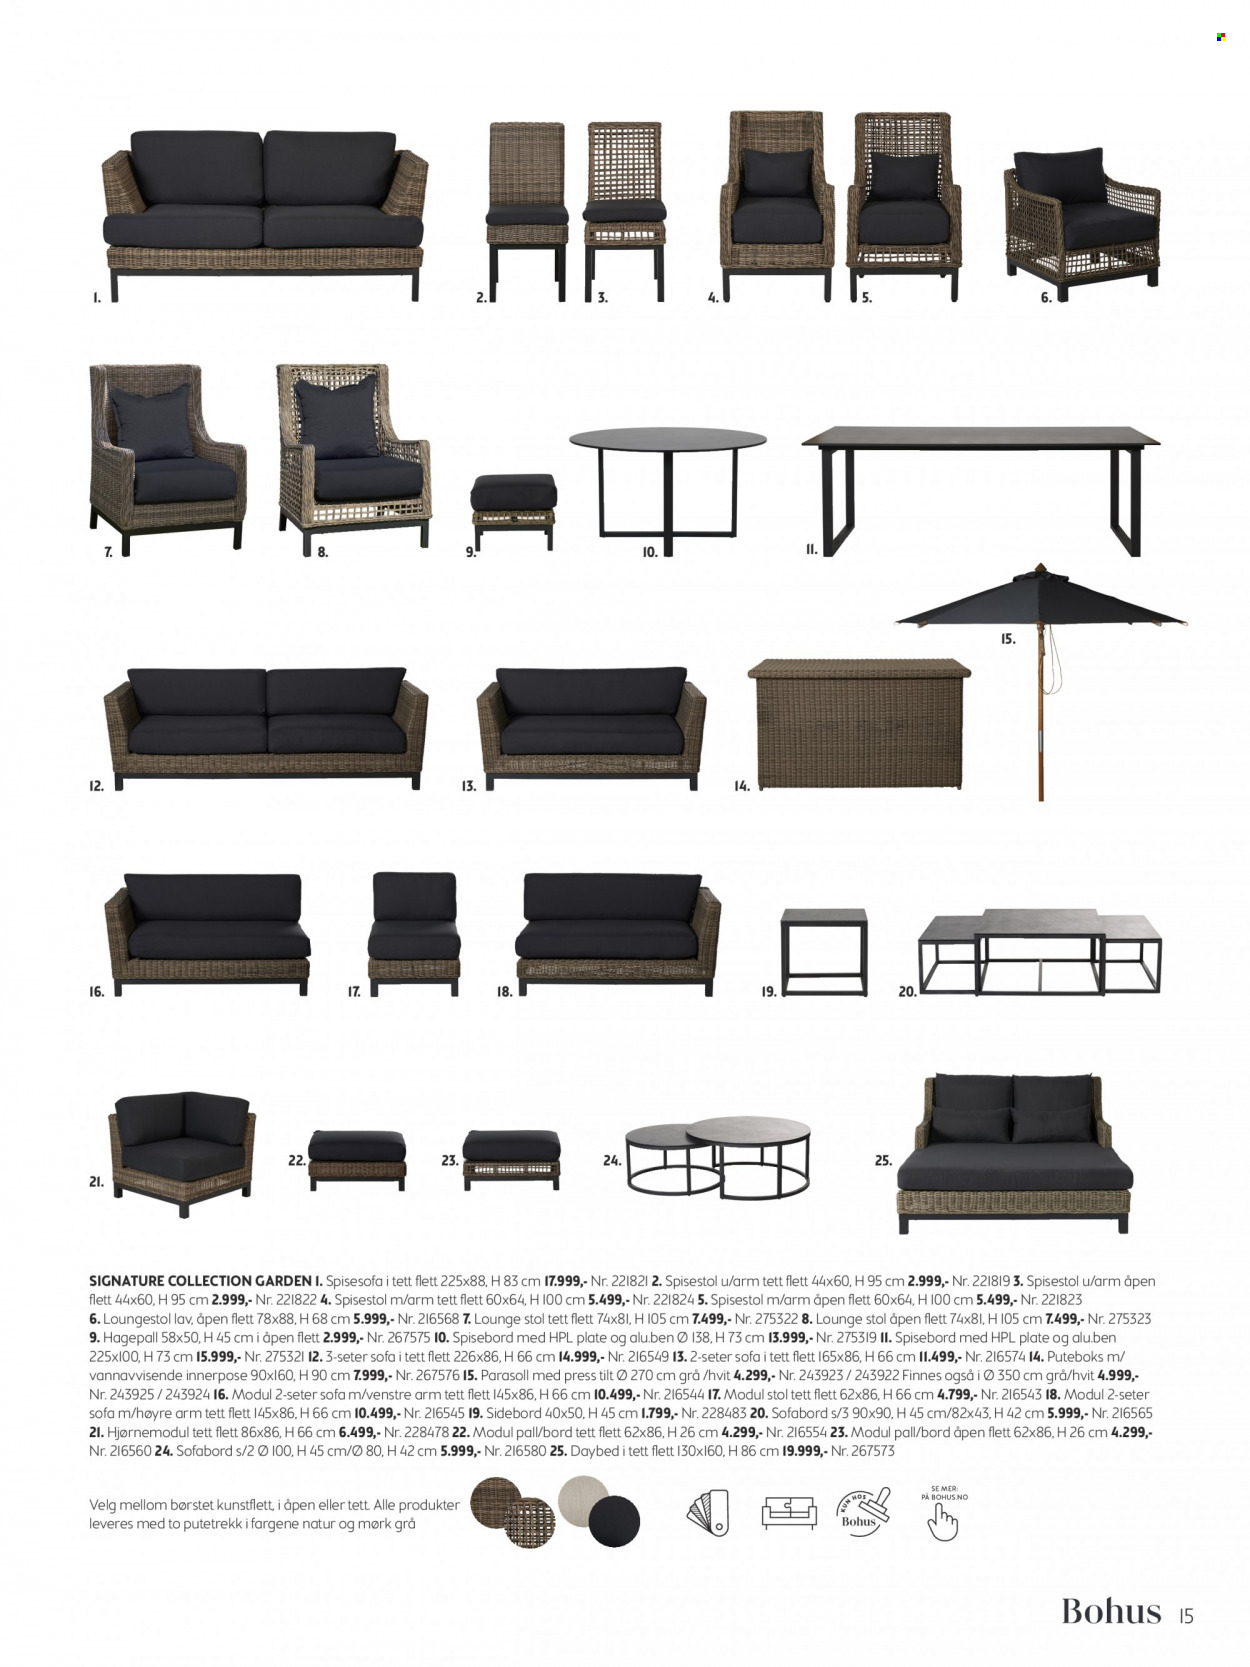 Kundeavis Bohus - Produkter fra tilbudsaviser - bord, loungestol, putetrekk, stol, spisebord, spisestol, sofa, parasoll. Side 15.